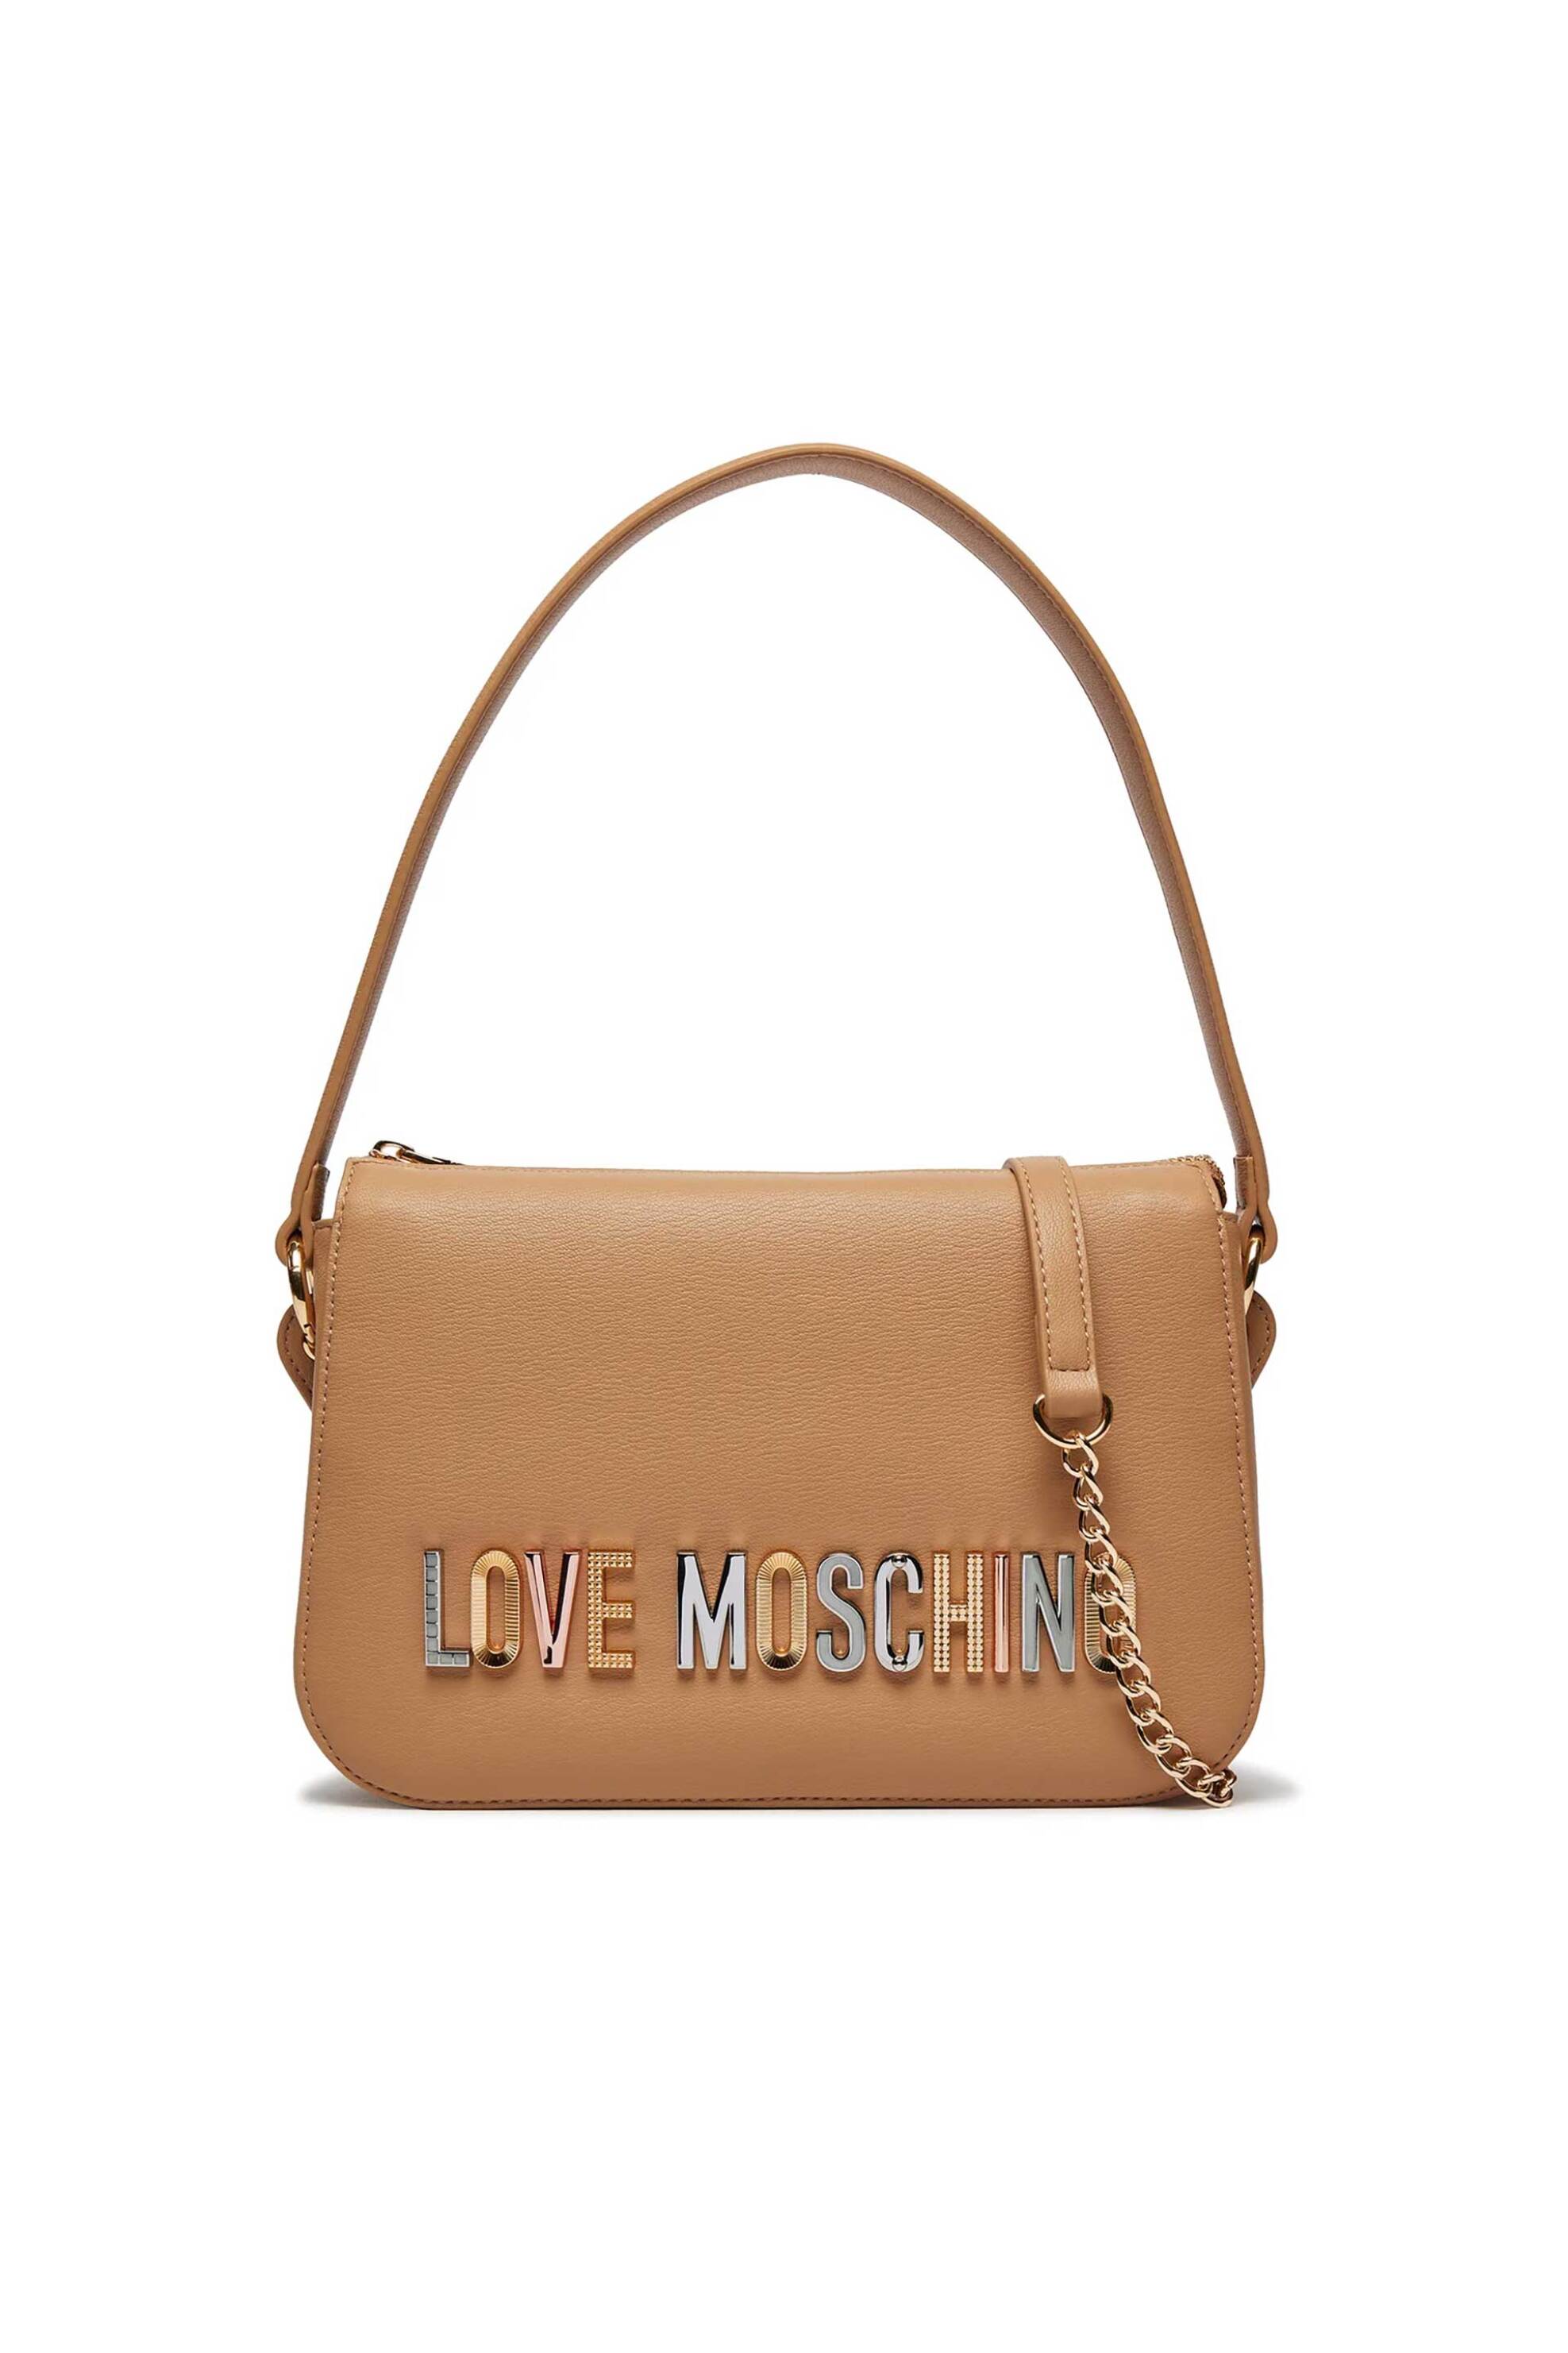 Love Moschino γυναικεία τσάντα χειρός μονόχρωμη με πολύχρωμο μεταλλικό λογότυπο - JC4306PP0IKN0 Ταμπά